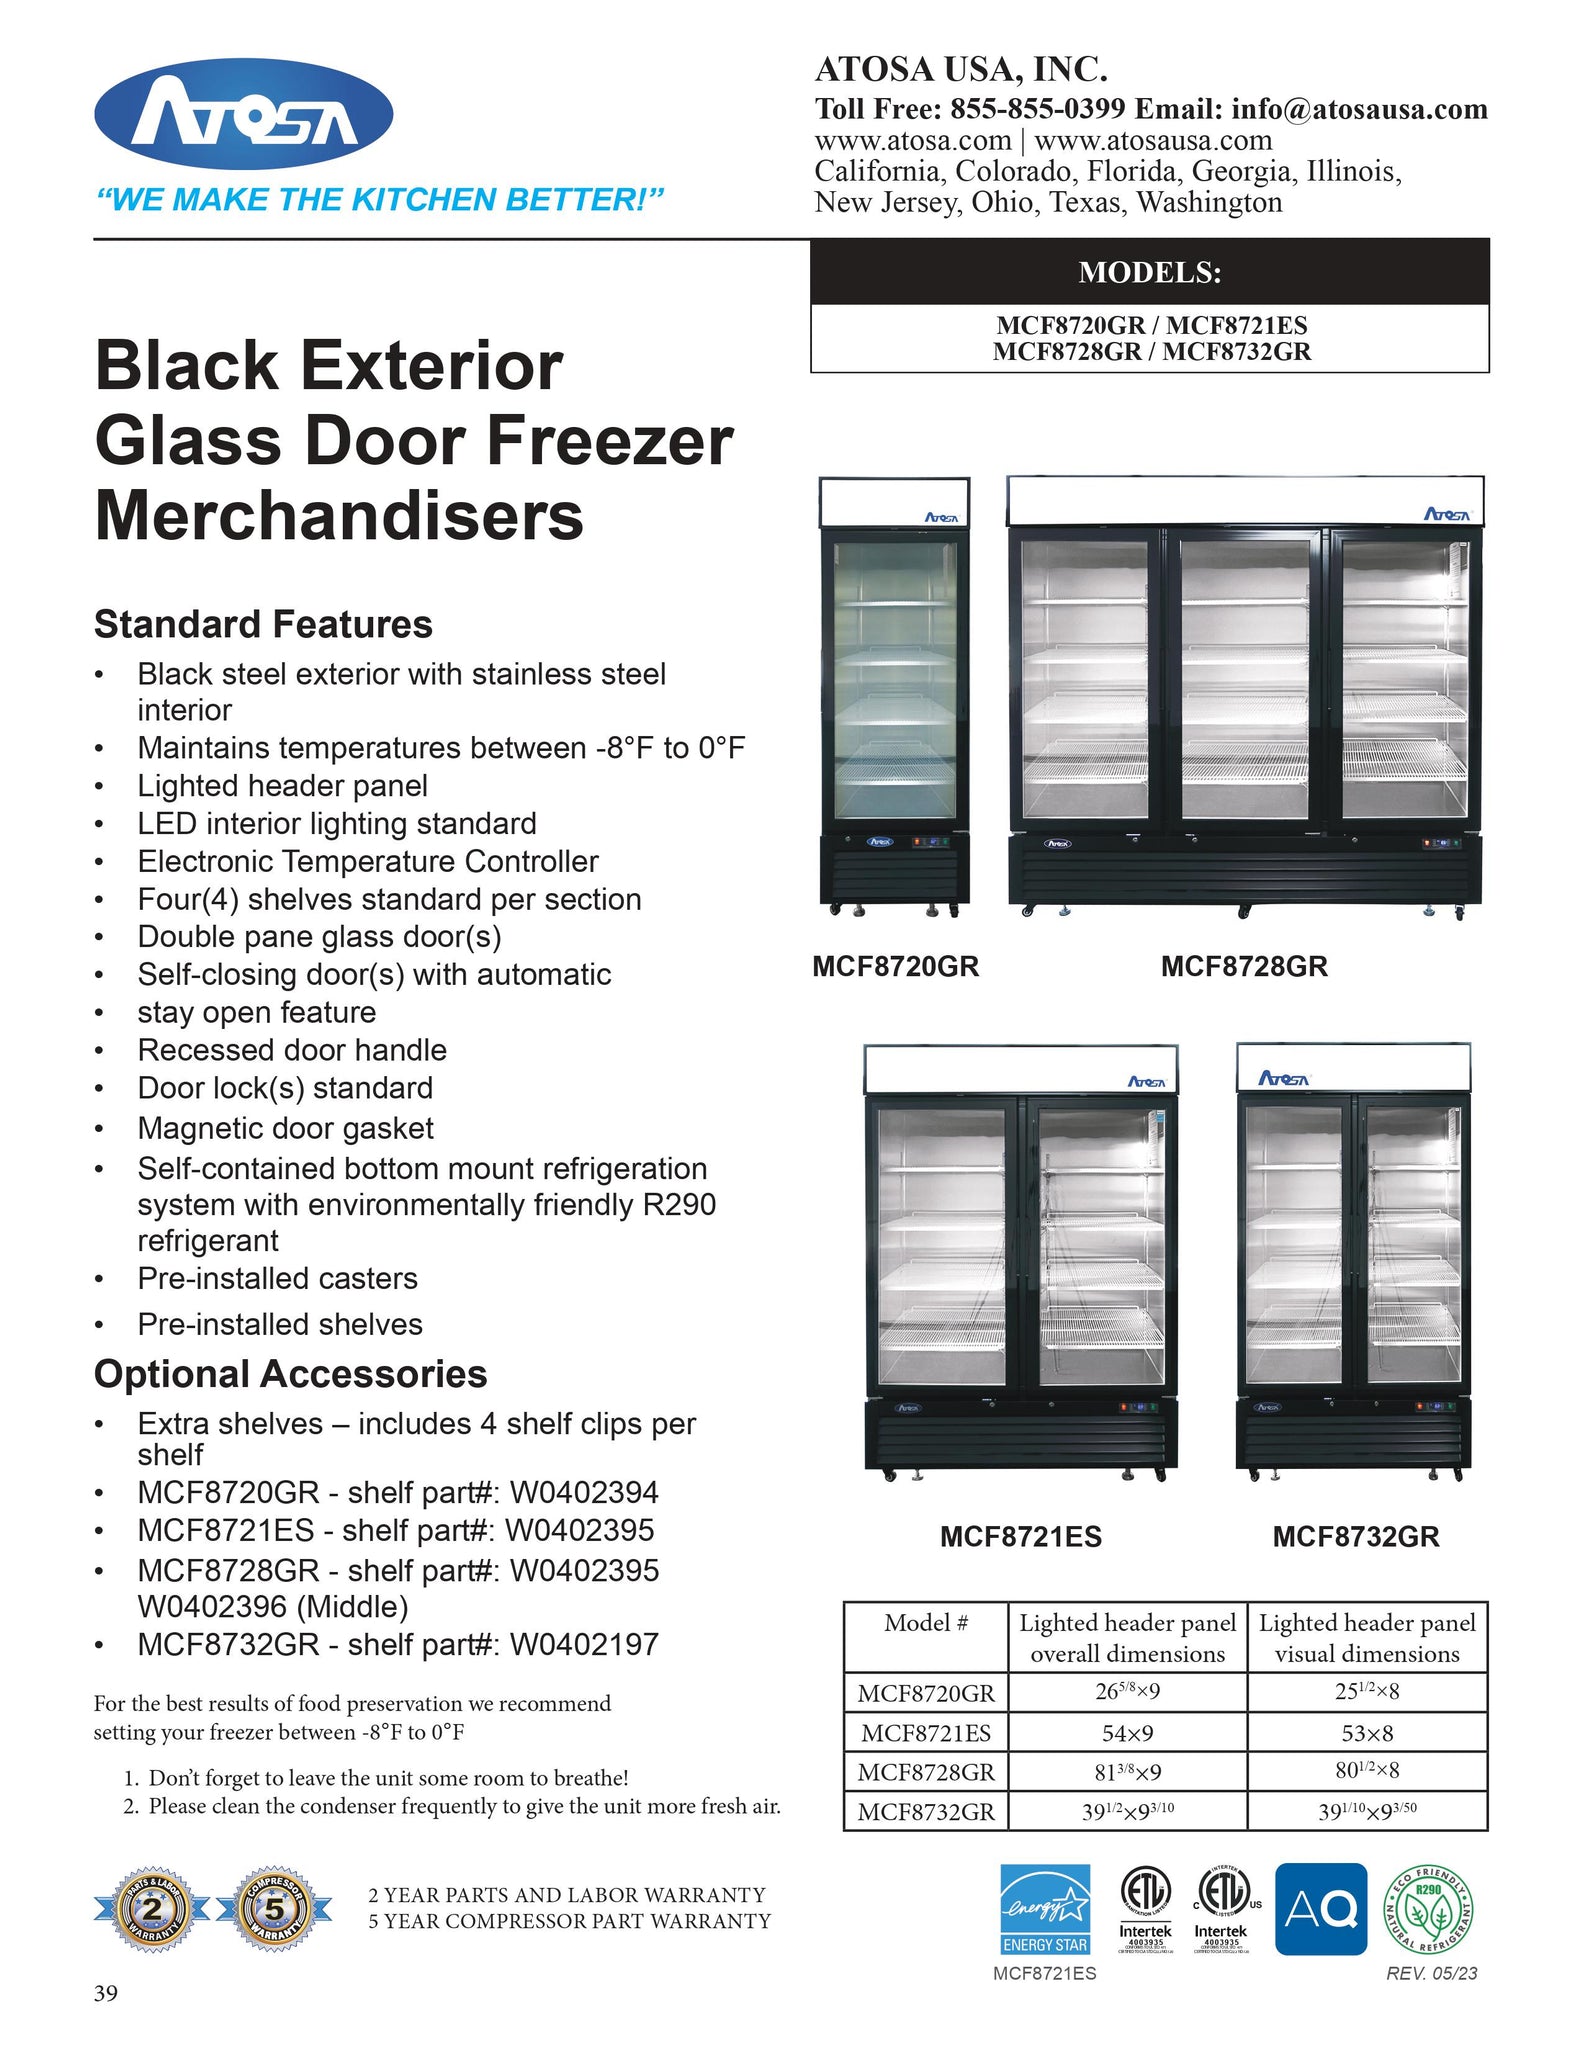 Atosa MCF8732GR 40" Two Section Glass Door Merchandiser Freezer